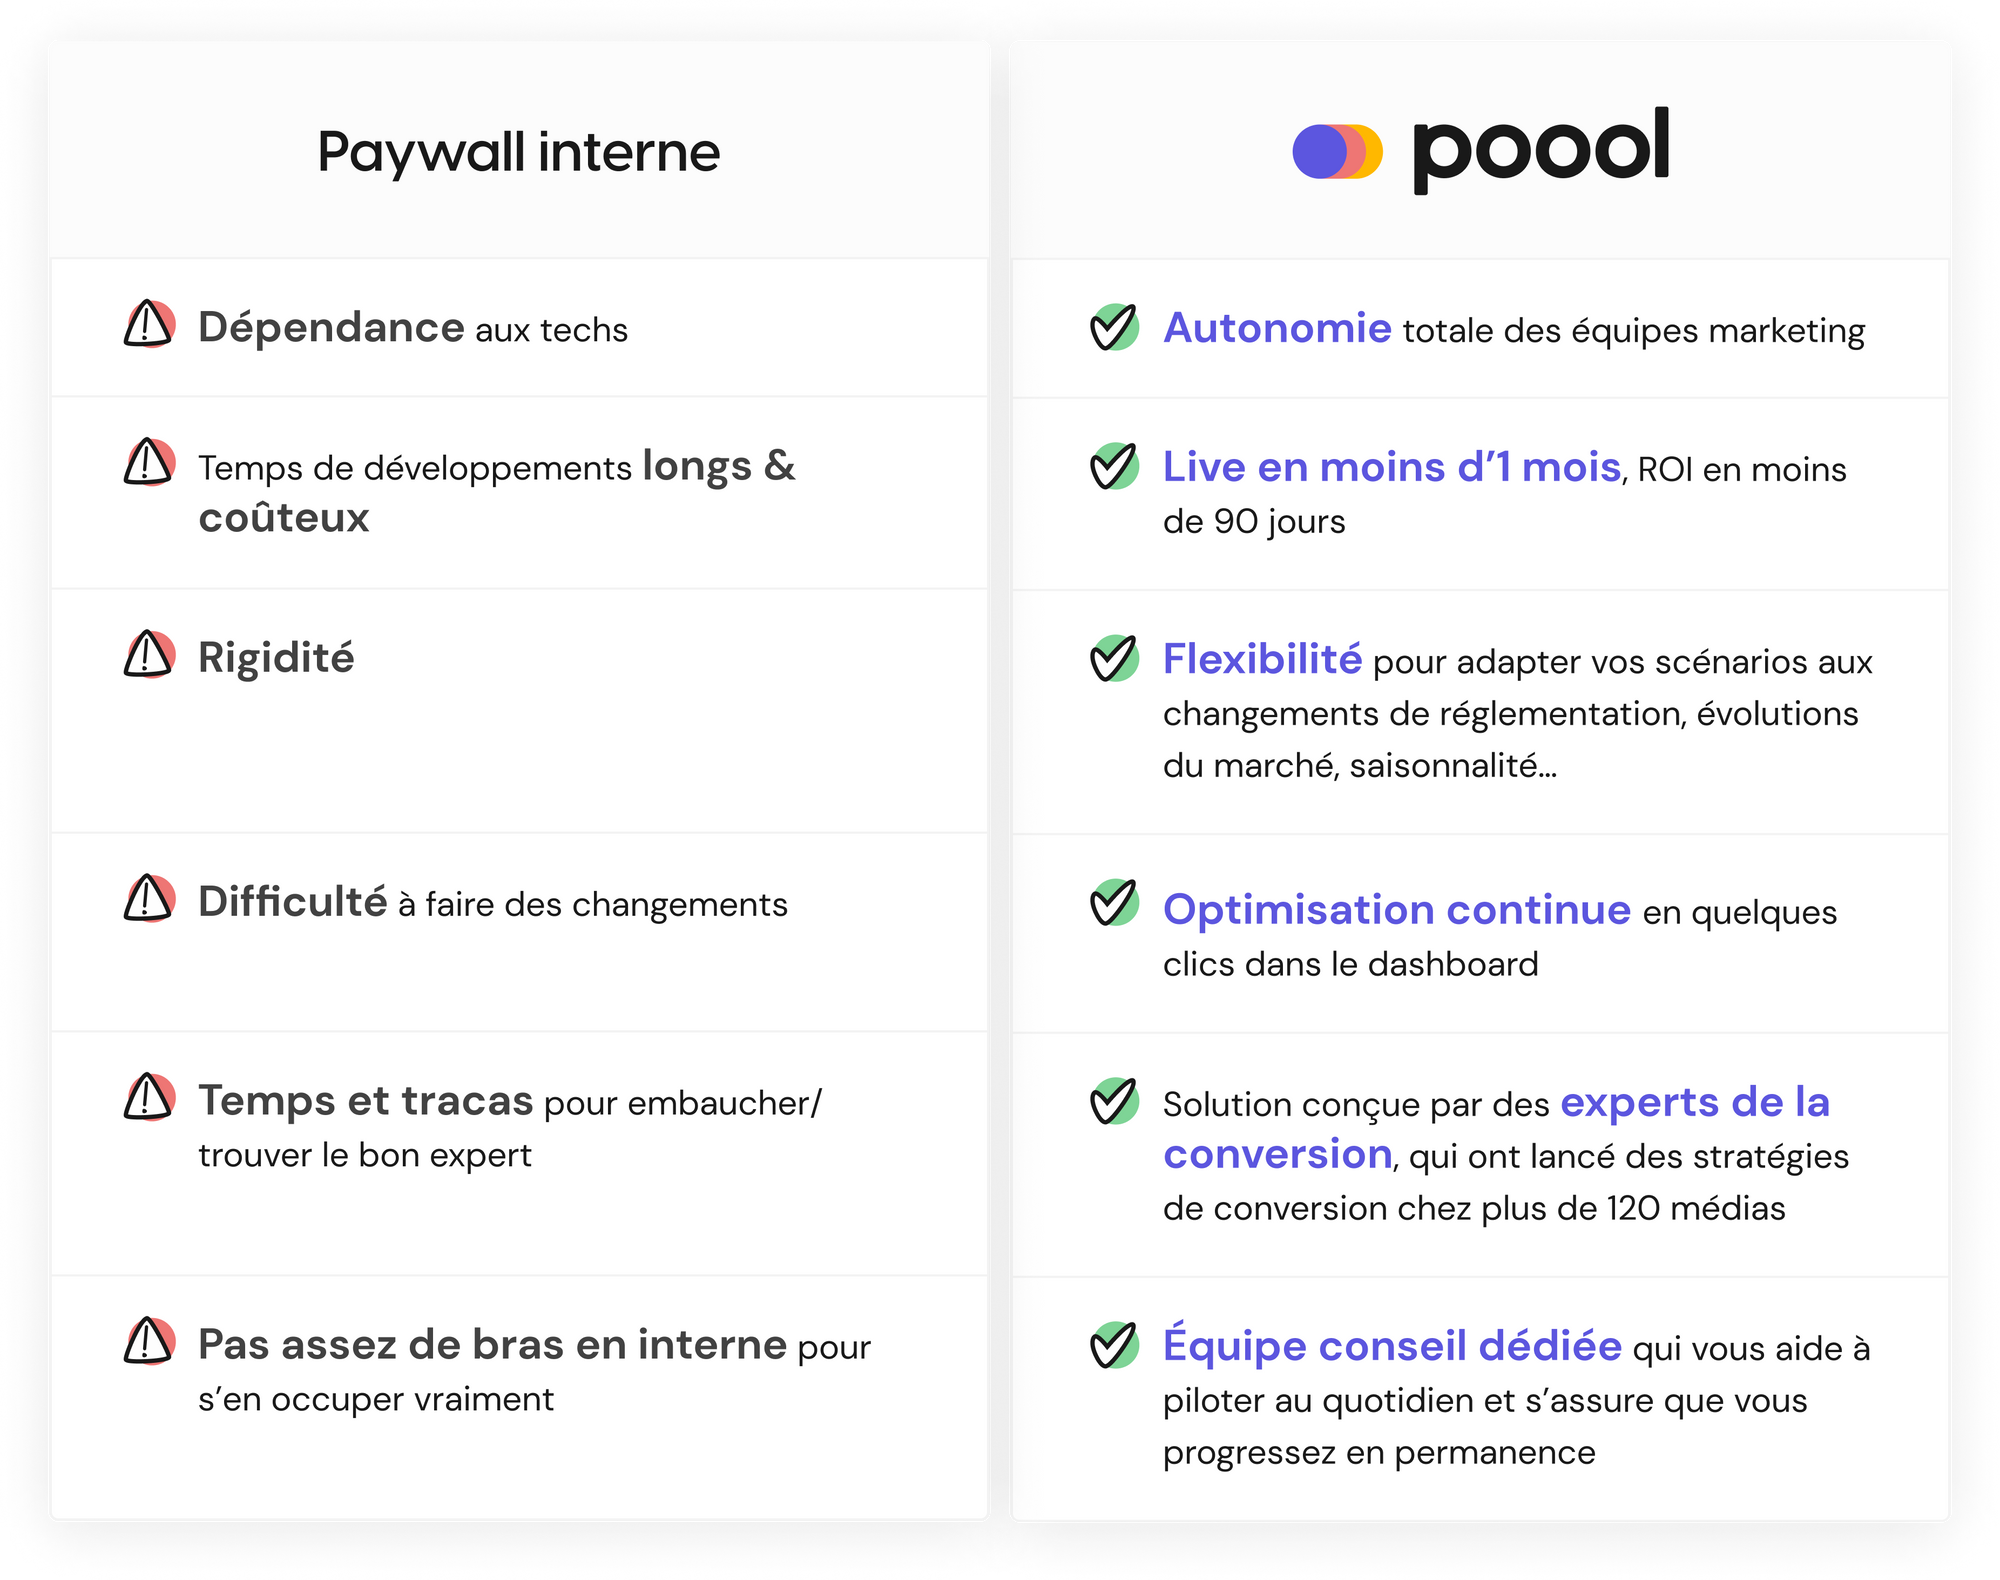 Pourquoi choisir Poool plutôt qu’un paywall interne ?